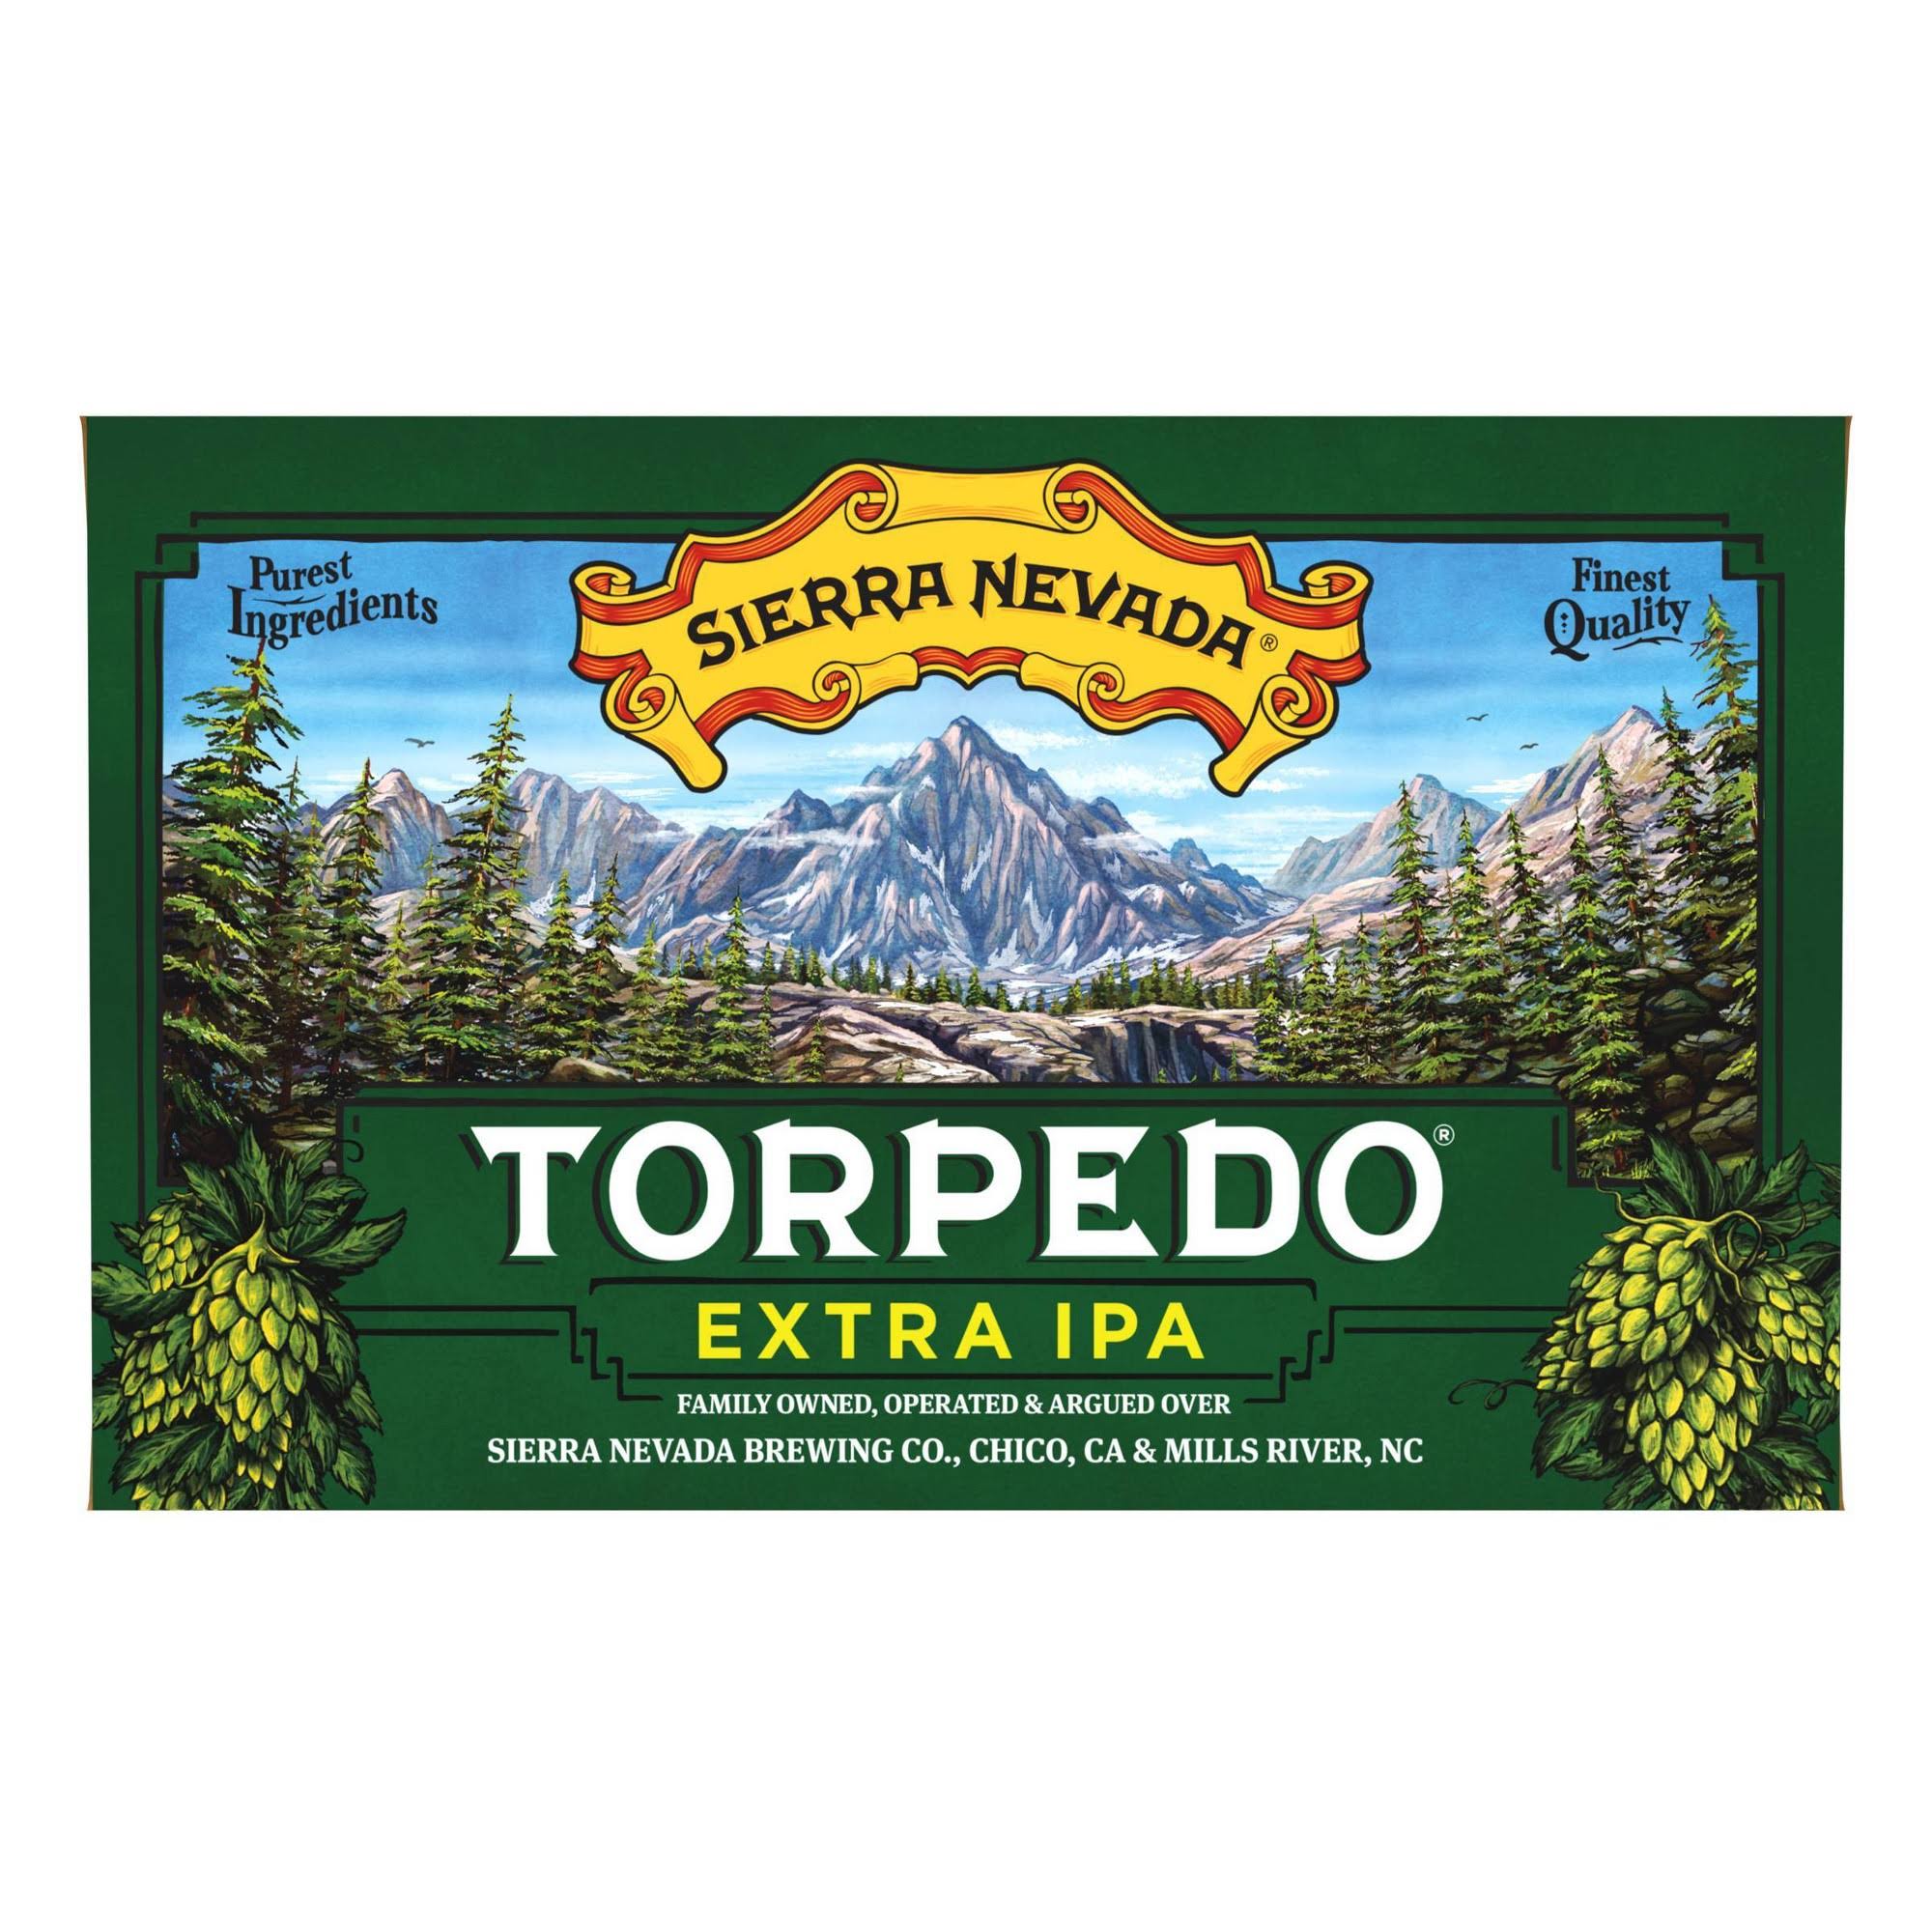 Sierra Nevada Torpedo Beer, Extra IPA - 6 pack, 12 fl oz cans